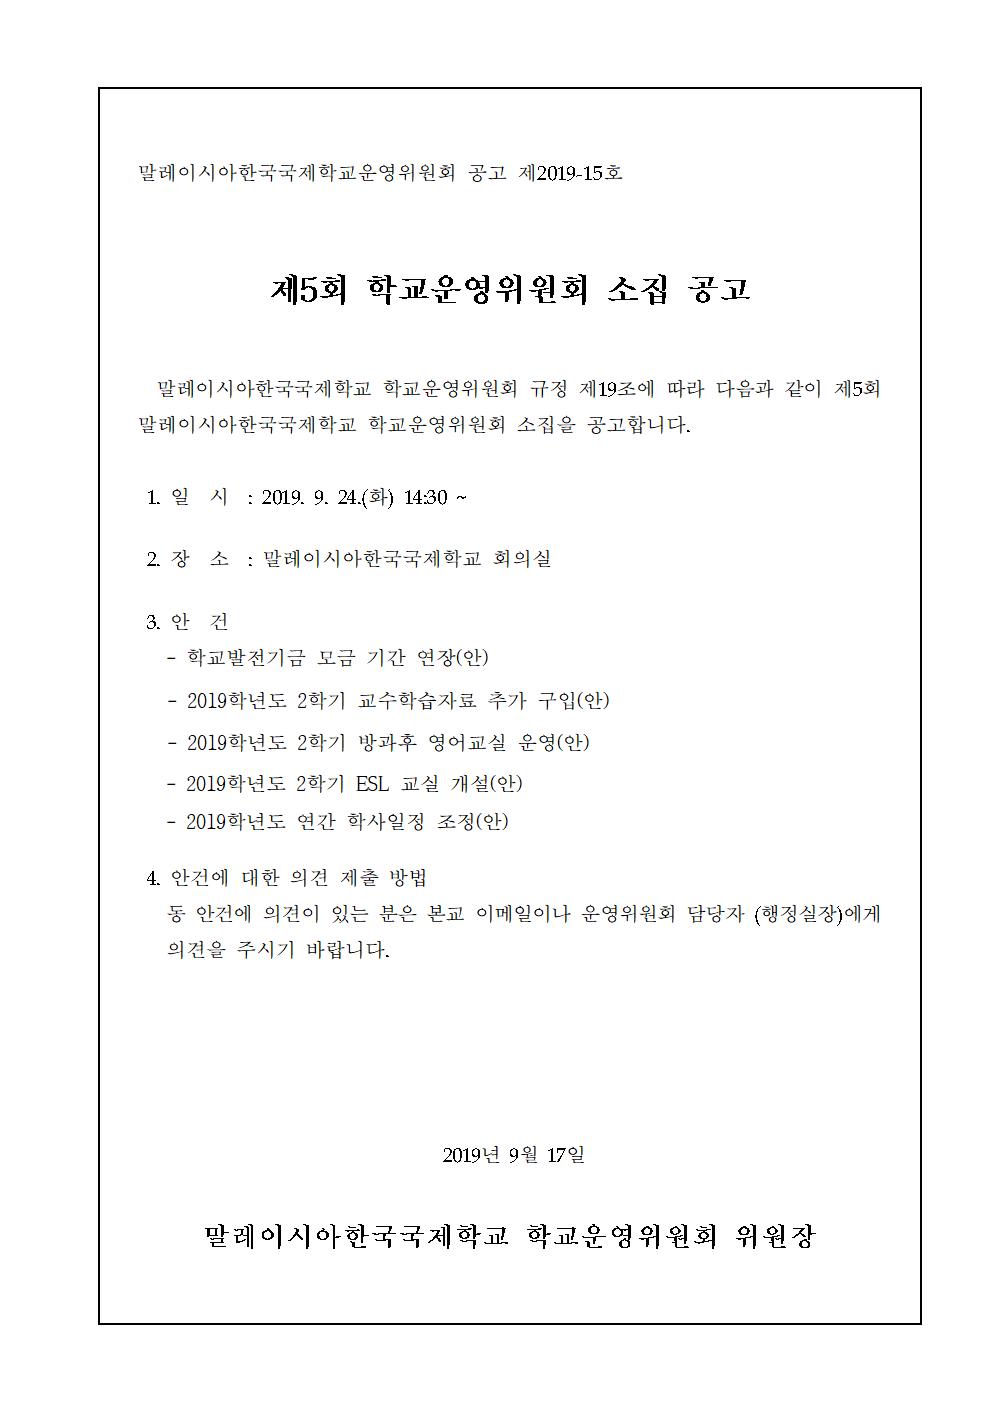 2019-5운영위원회 임시회 개최 알림(시행문)002.jpg